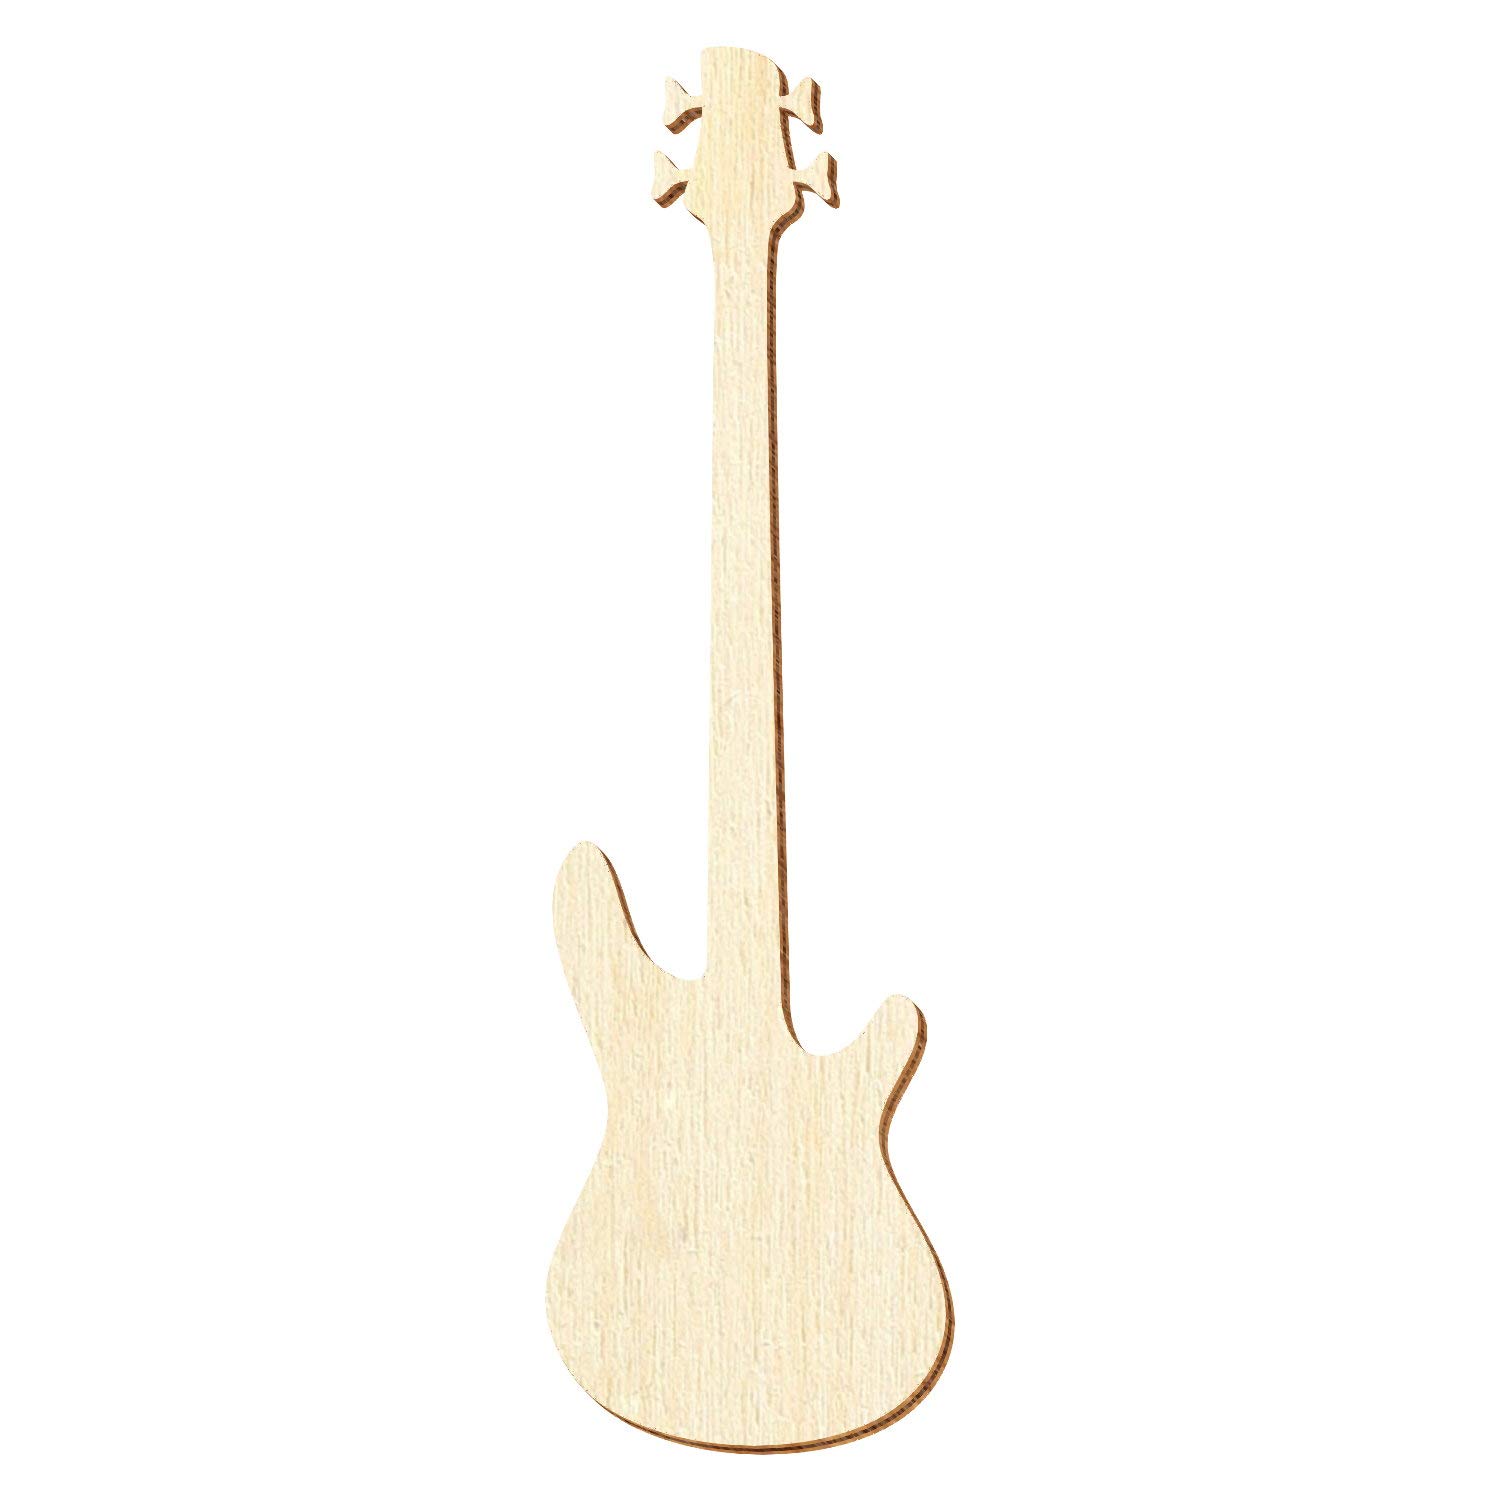 Holz Bassgitarre - Deko Zuschnitte Größenauswahl, Pack mit:1 Stück, Größe:37cm